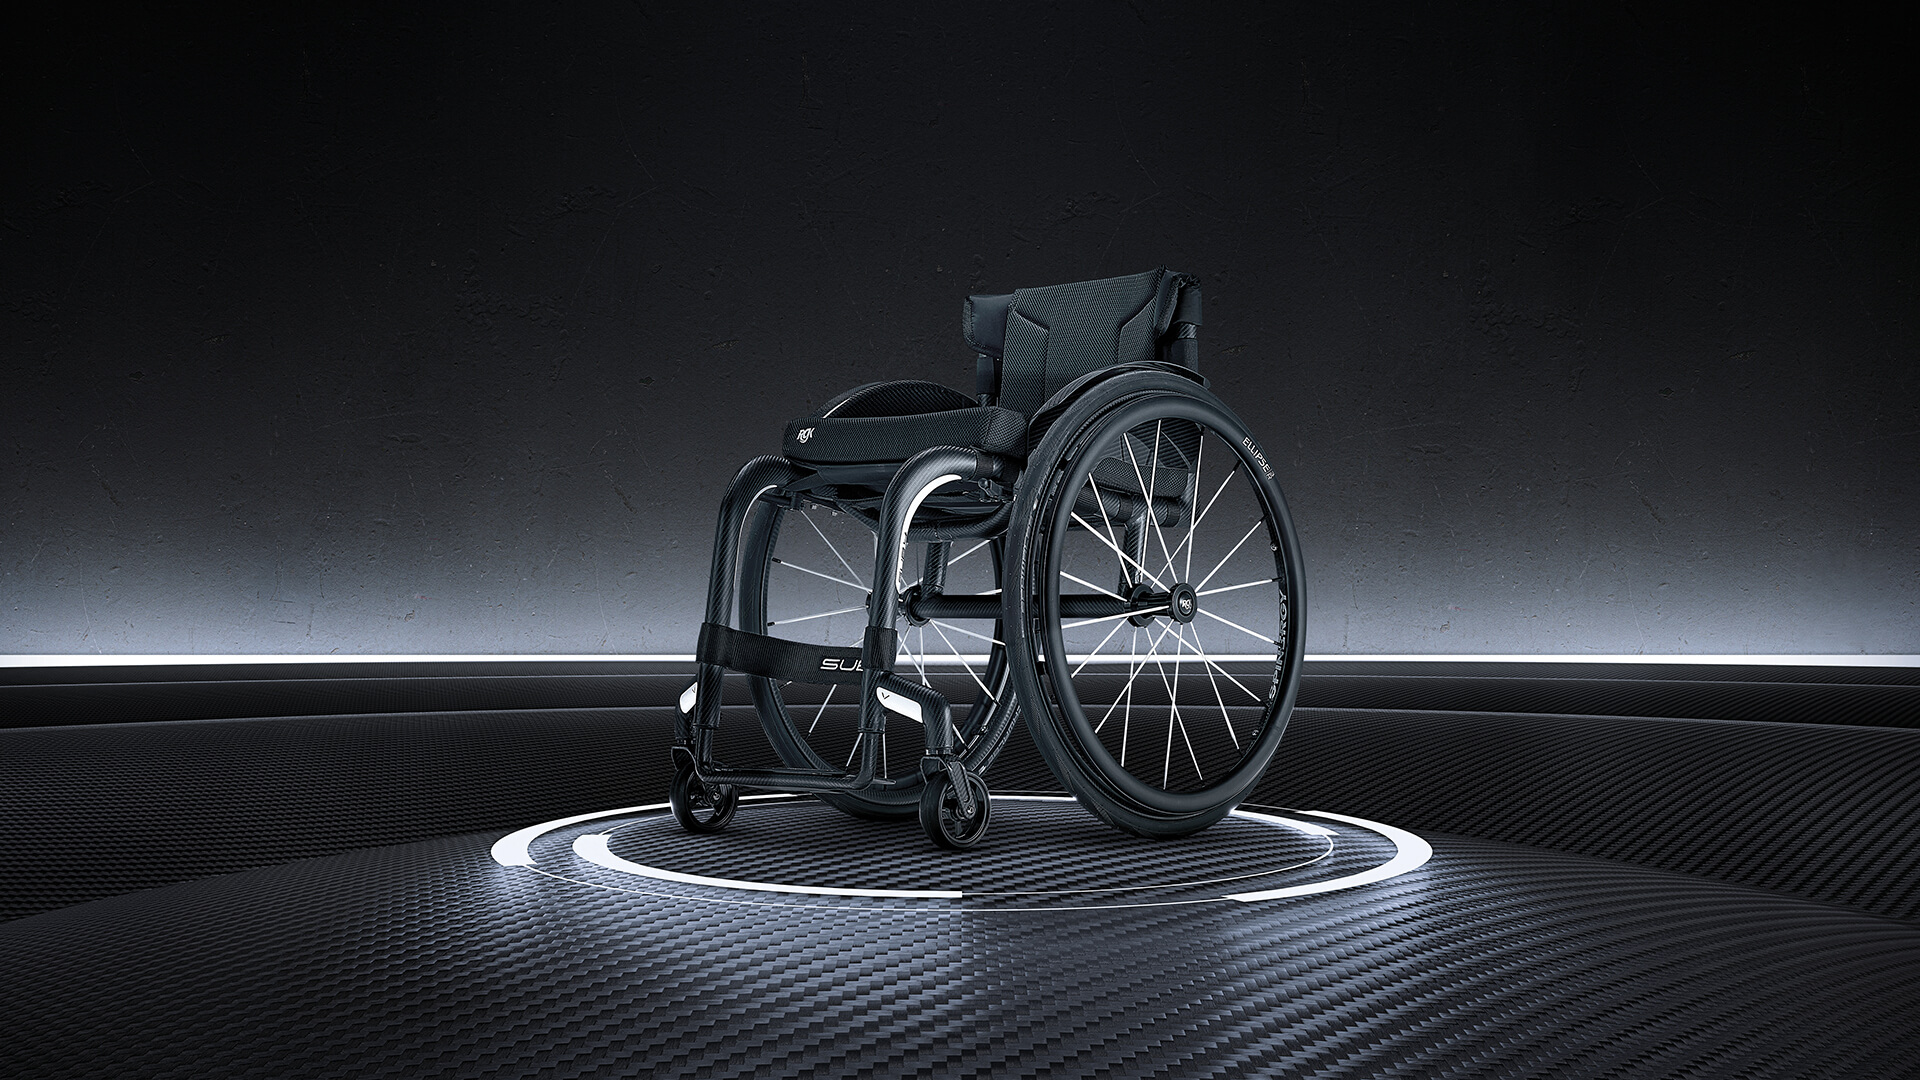 Le fauteuil roulant RGK Veypr Sub4 remporte le prix de l'innovation Harding au CSMC du Canada